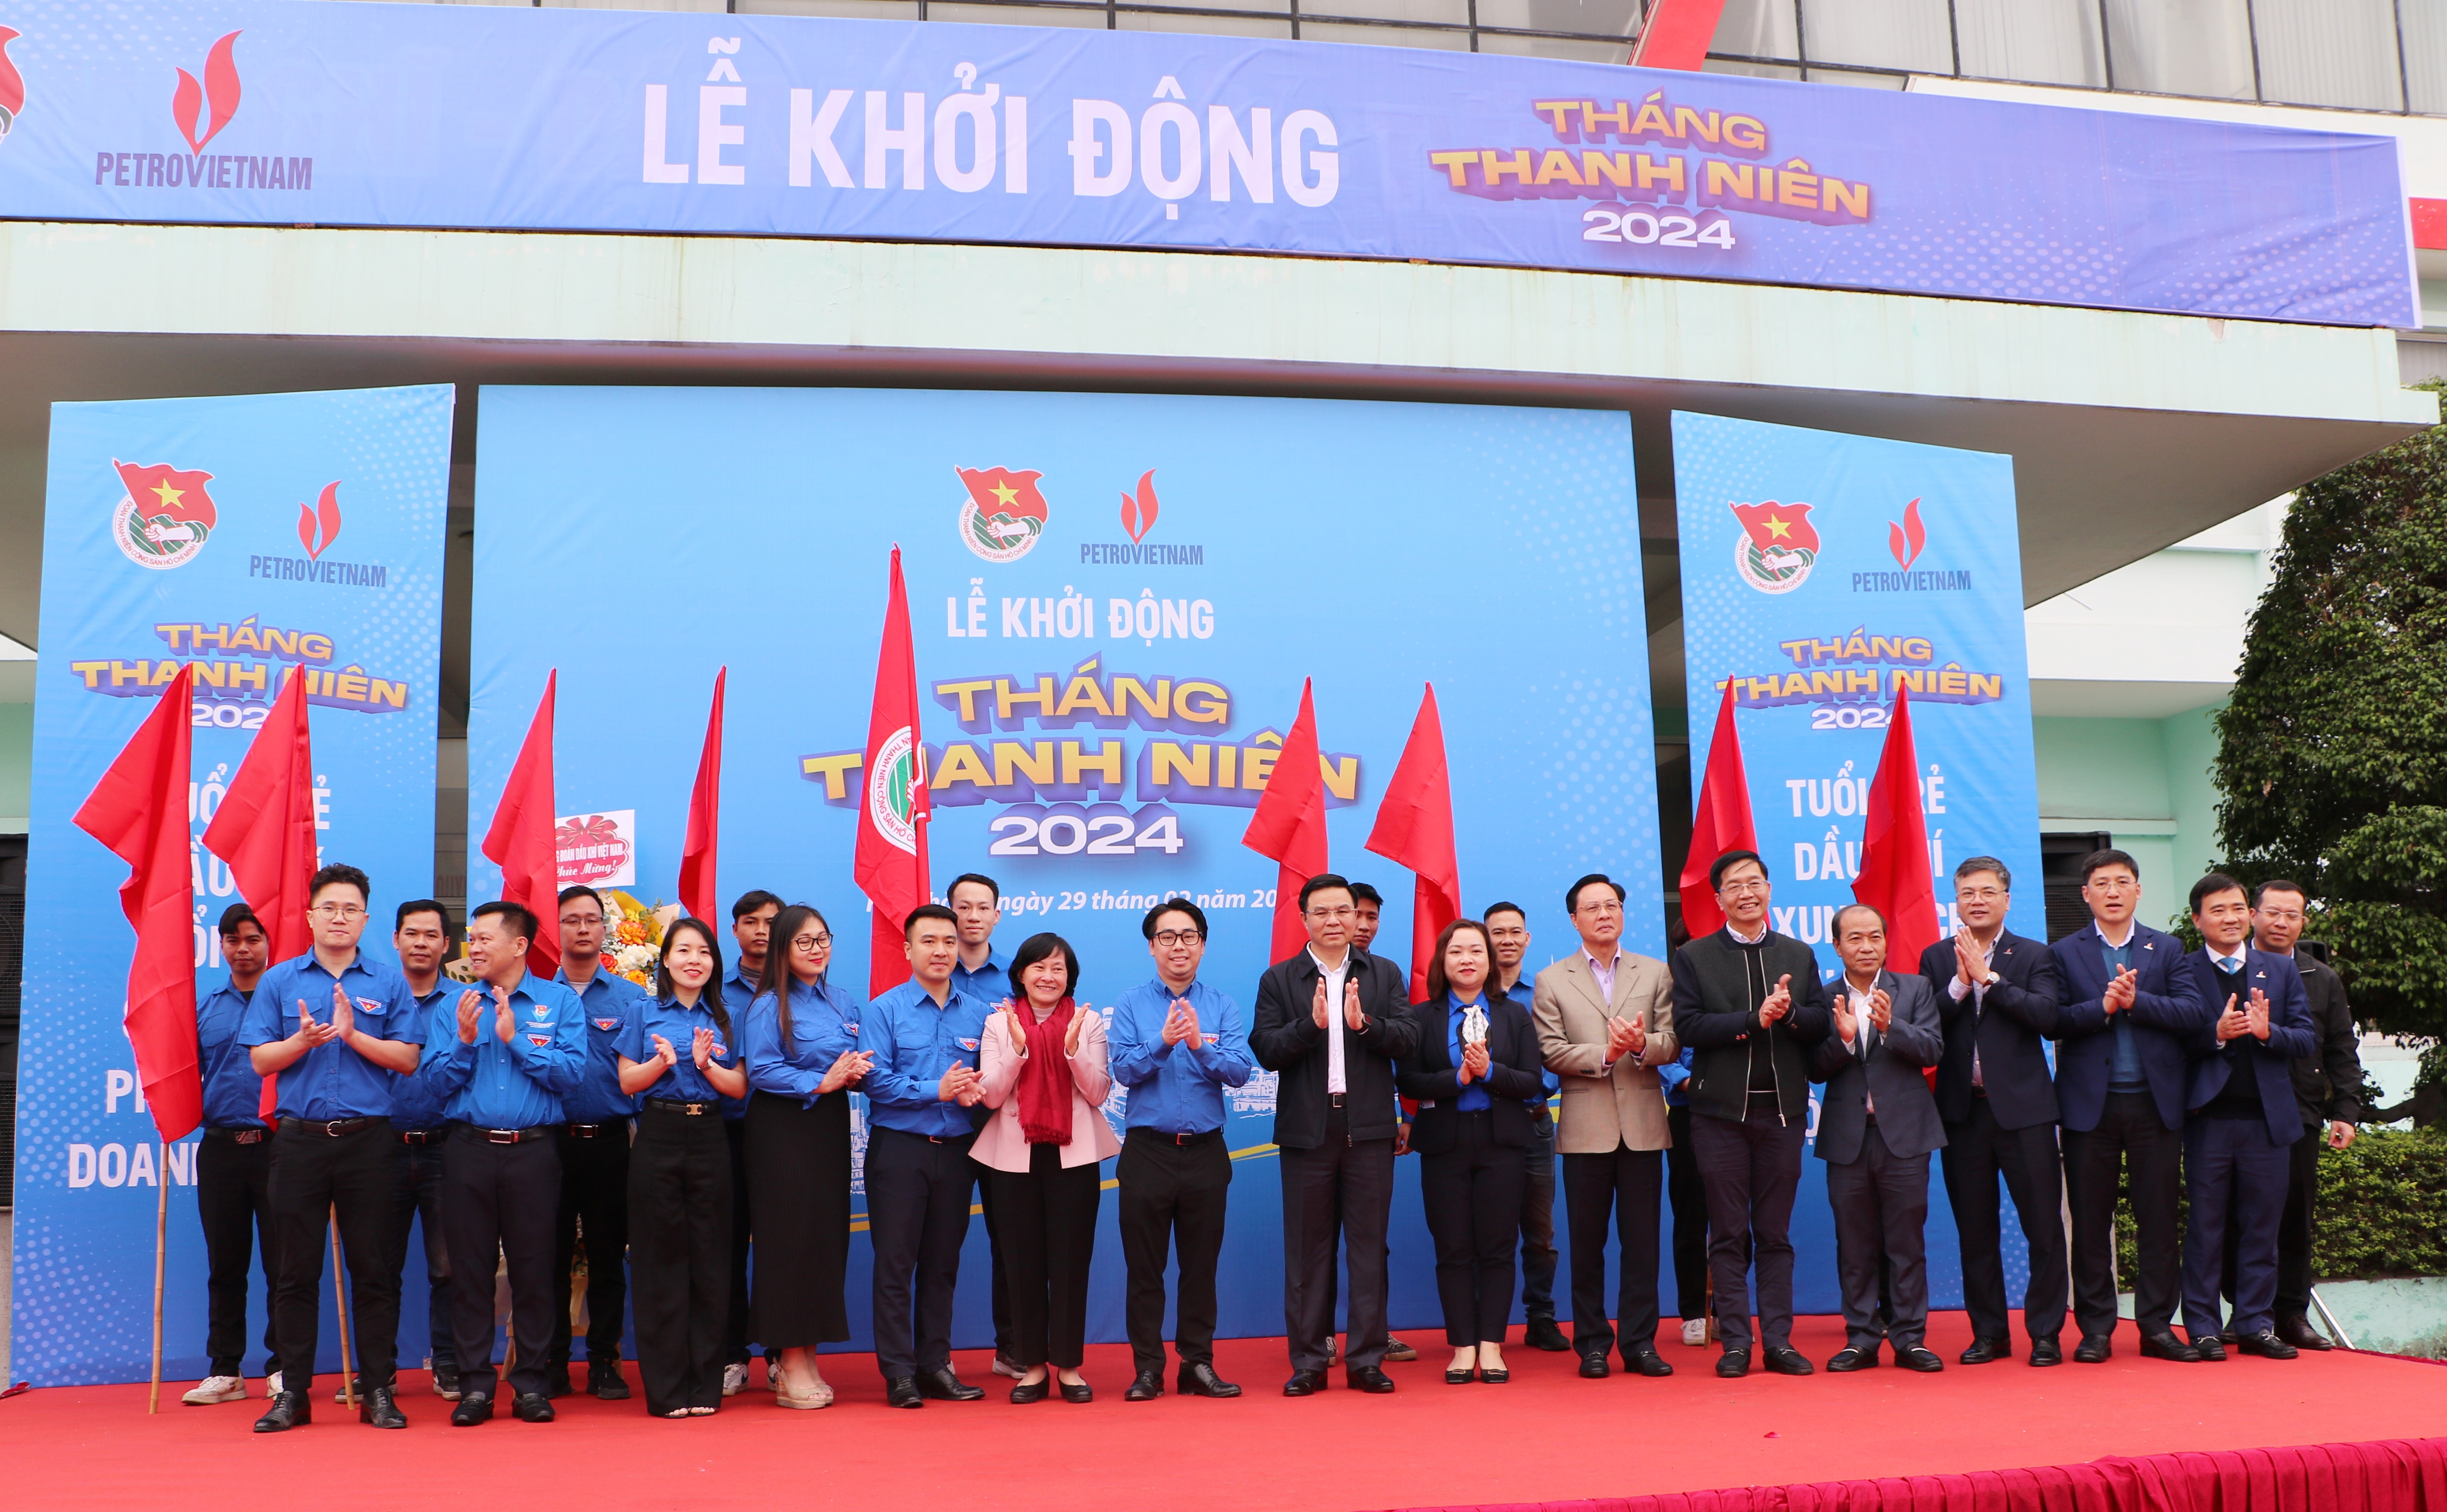 Đoàn Thanh niên Tập đoàn Dầu khí Quốc gia Việt Nam tổ chức Lễ Khởi động Tháng Thanh niên năm 2024